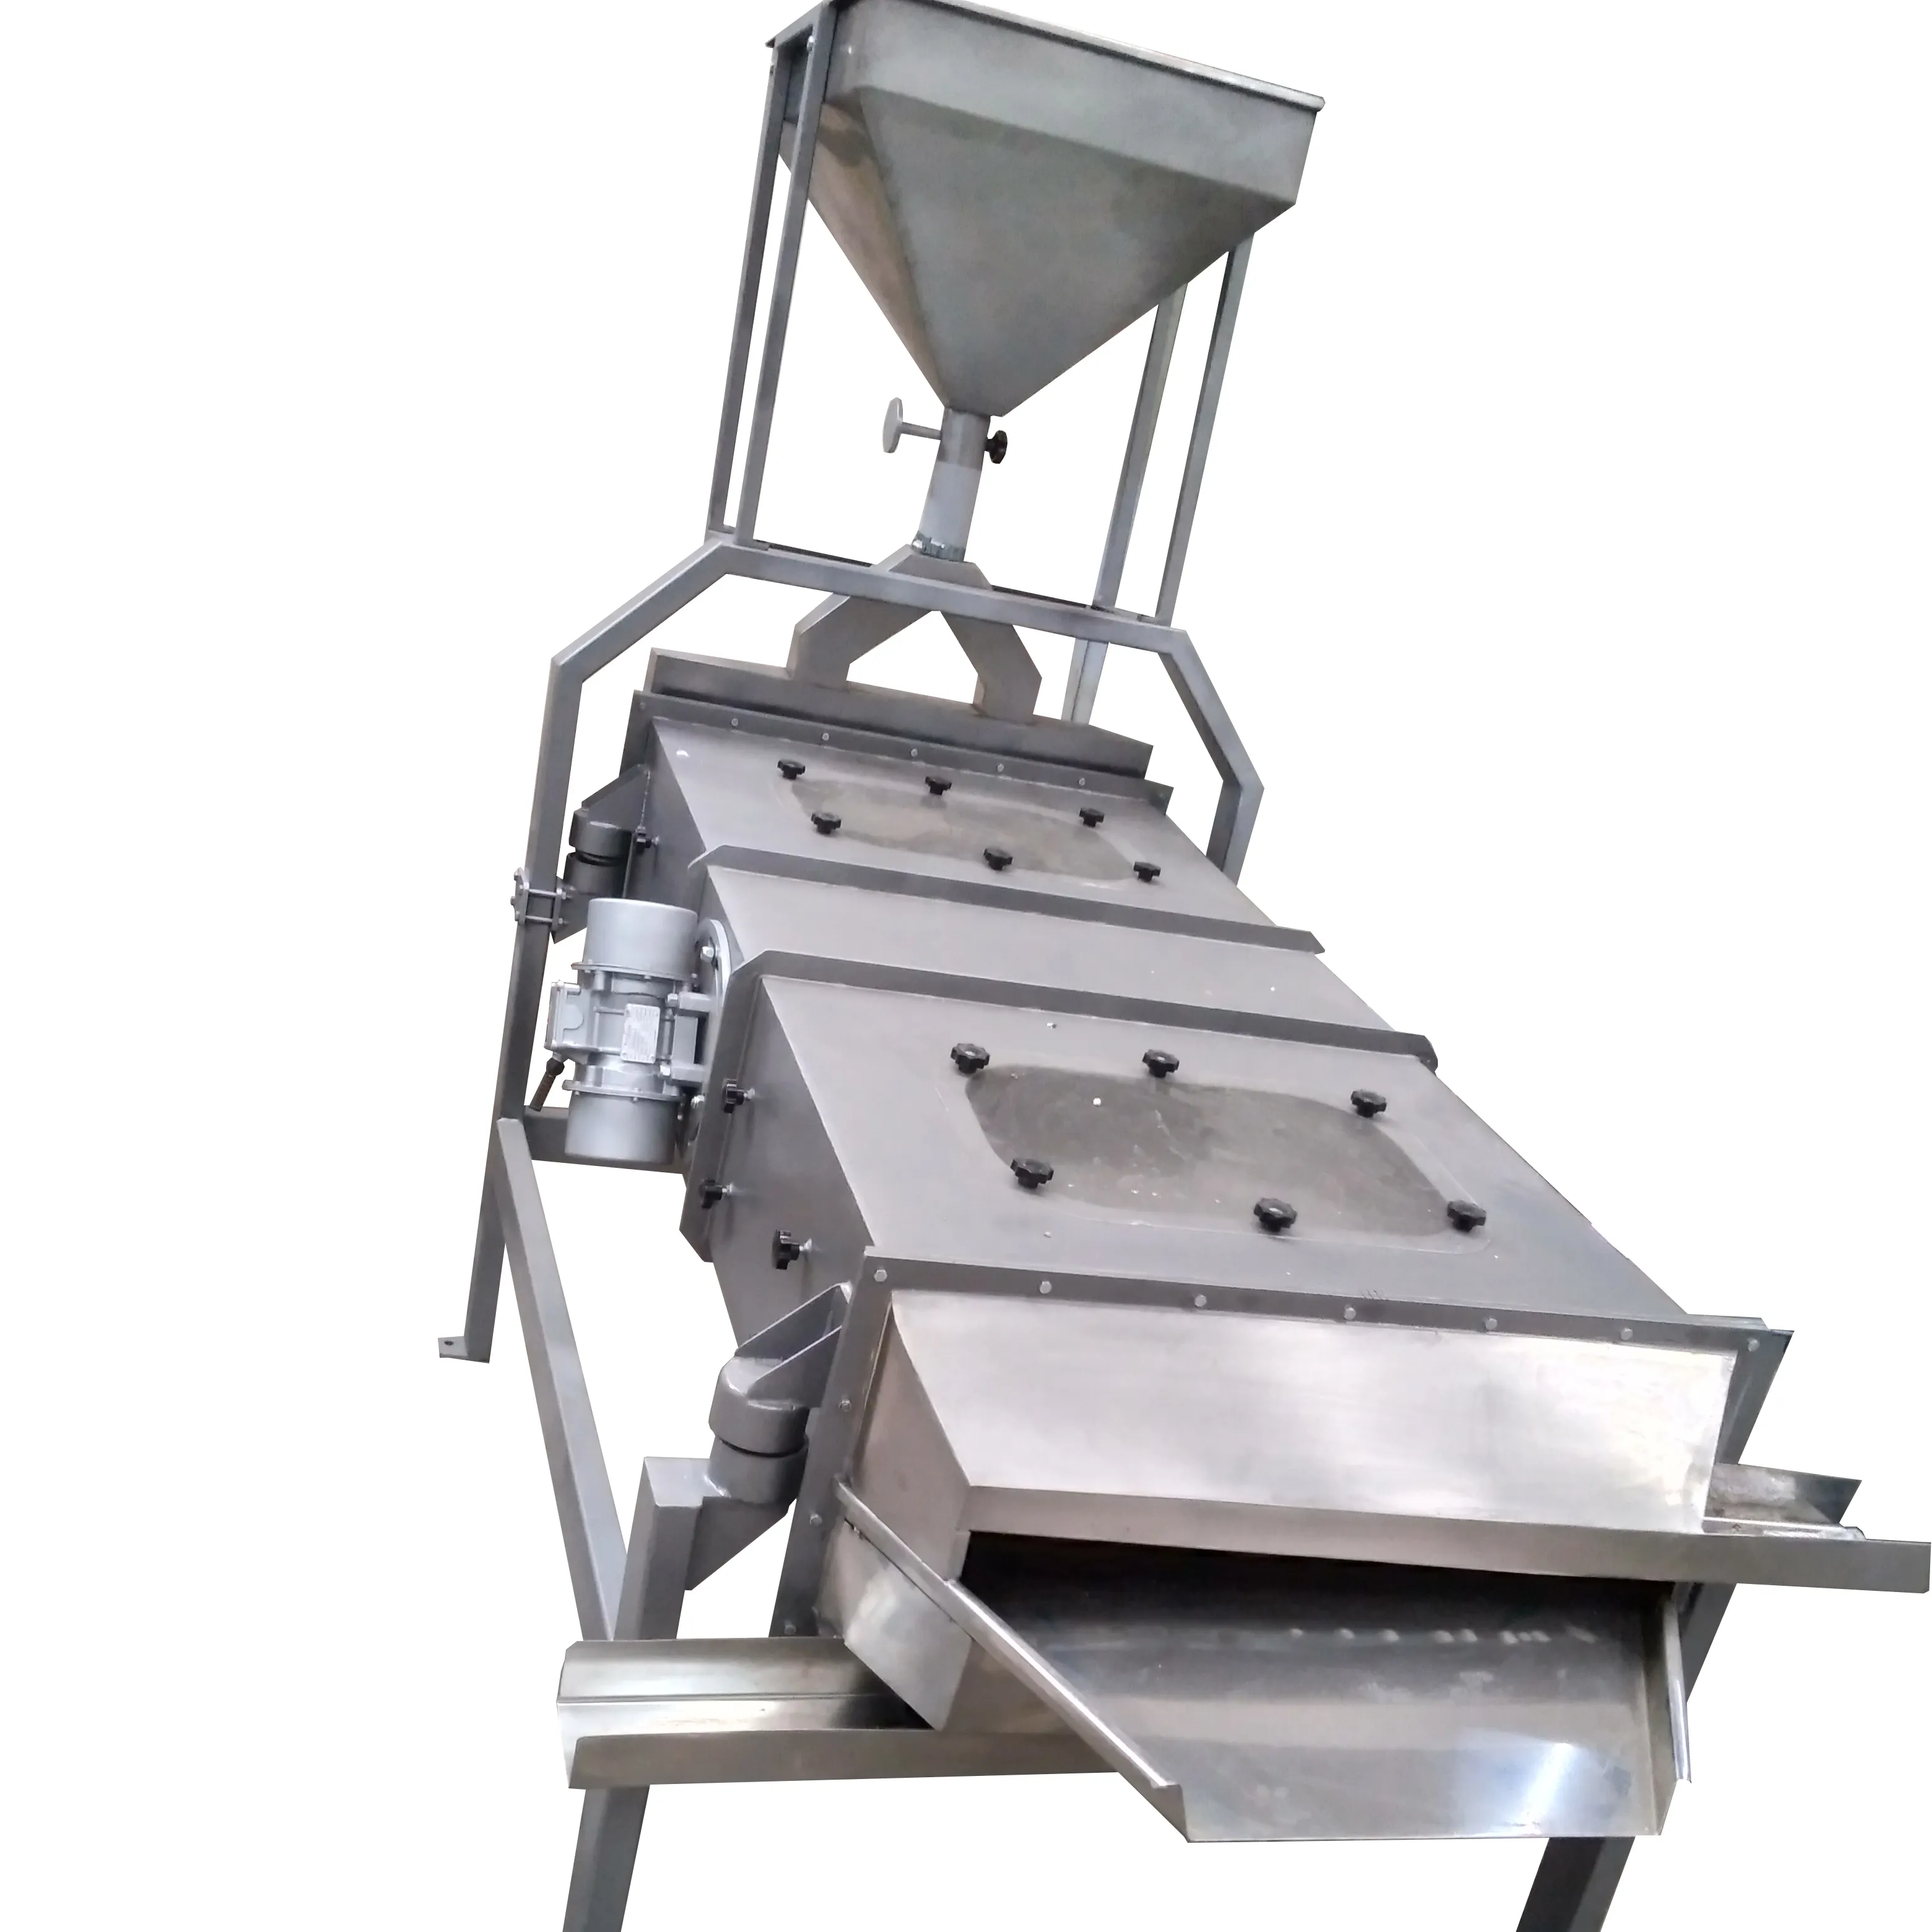 तिल sieving मशीन तिल चलनी तिल ताहिनी के लिए सफाई मशीन उत्पादन लाइन और halawa उत्पादन